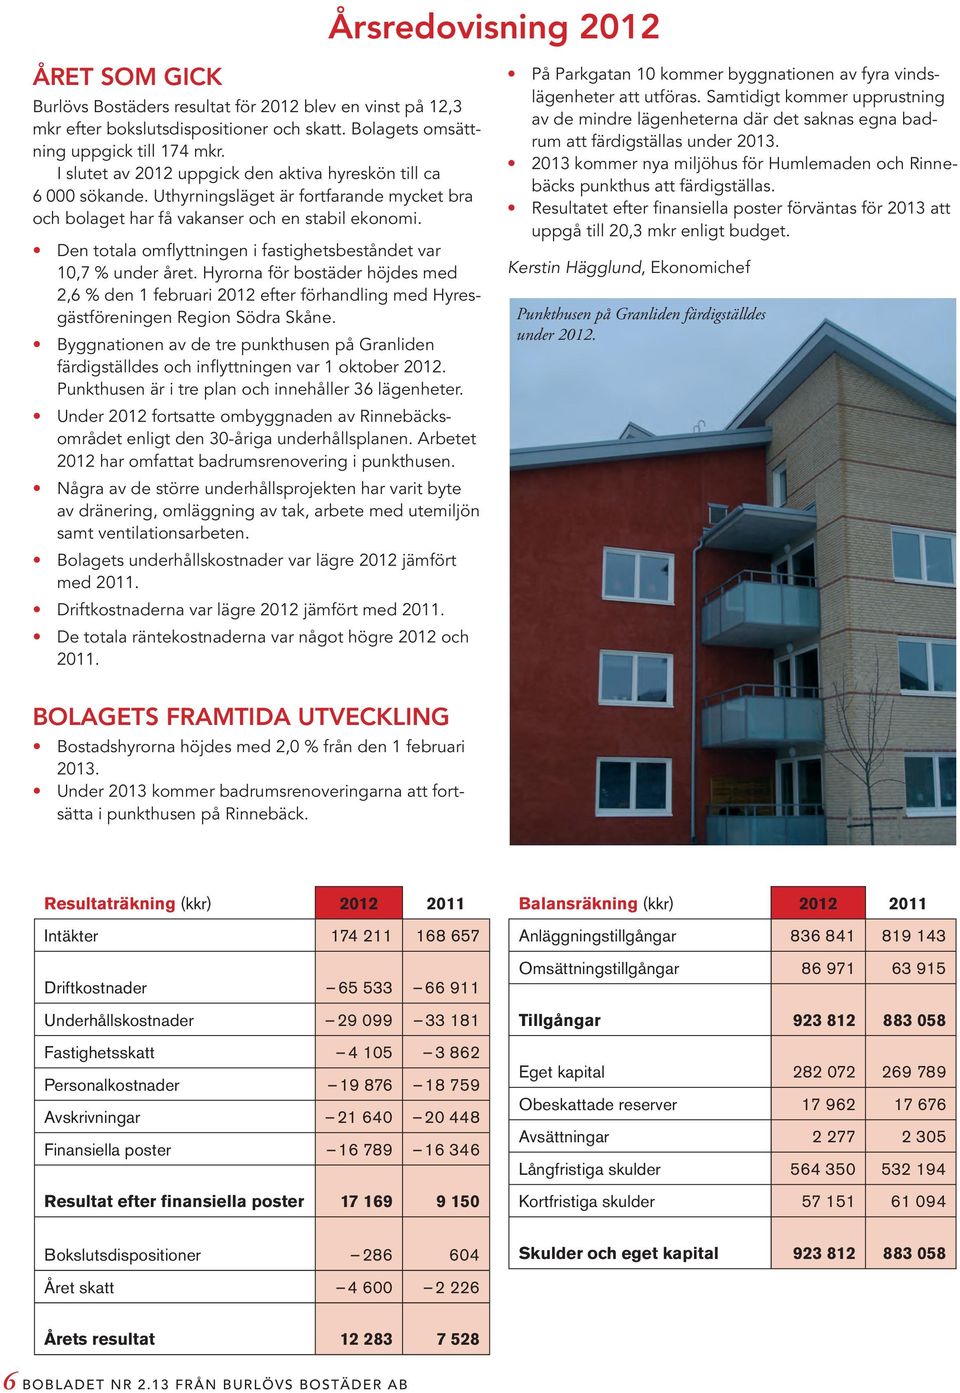 Den totala omflyttningen i fastighetsbeståndet var 10,7 % under året. Hyrorna för bostäder höjdes med 2,6 % den 1 februari 2012 efter förhandling med Hyresgästföreningen Region Södra Skåne.